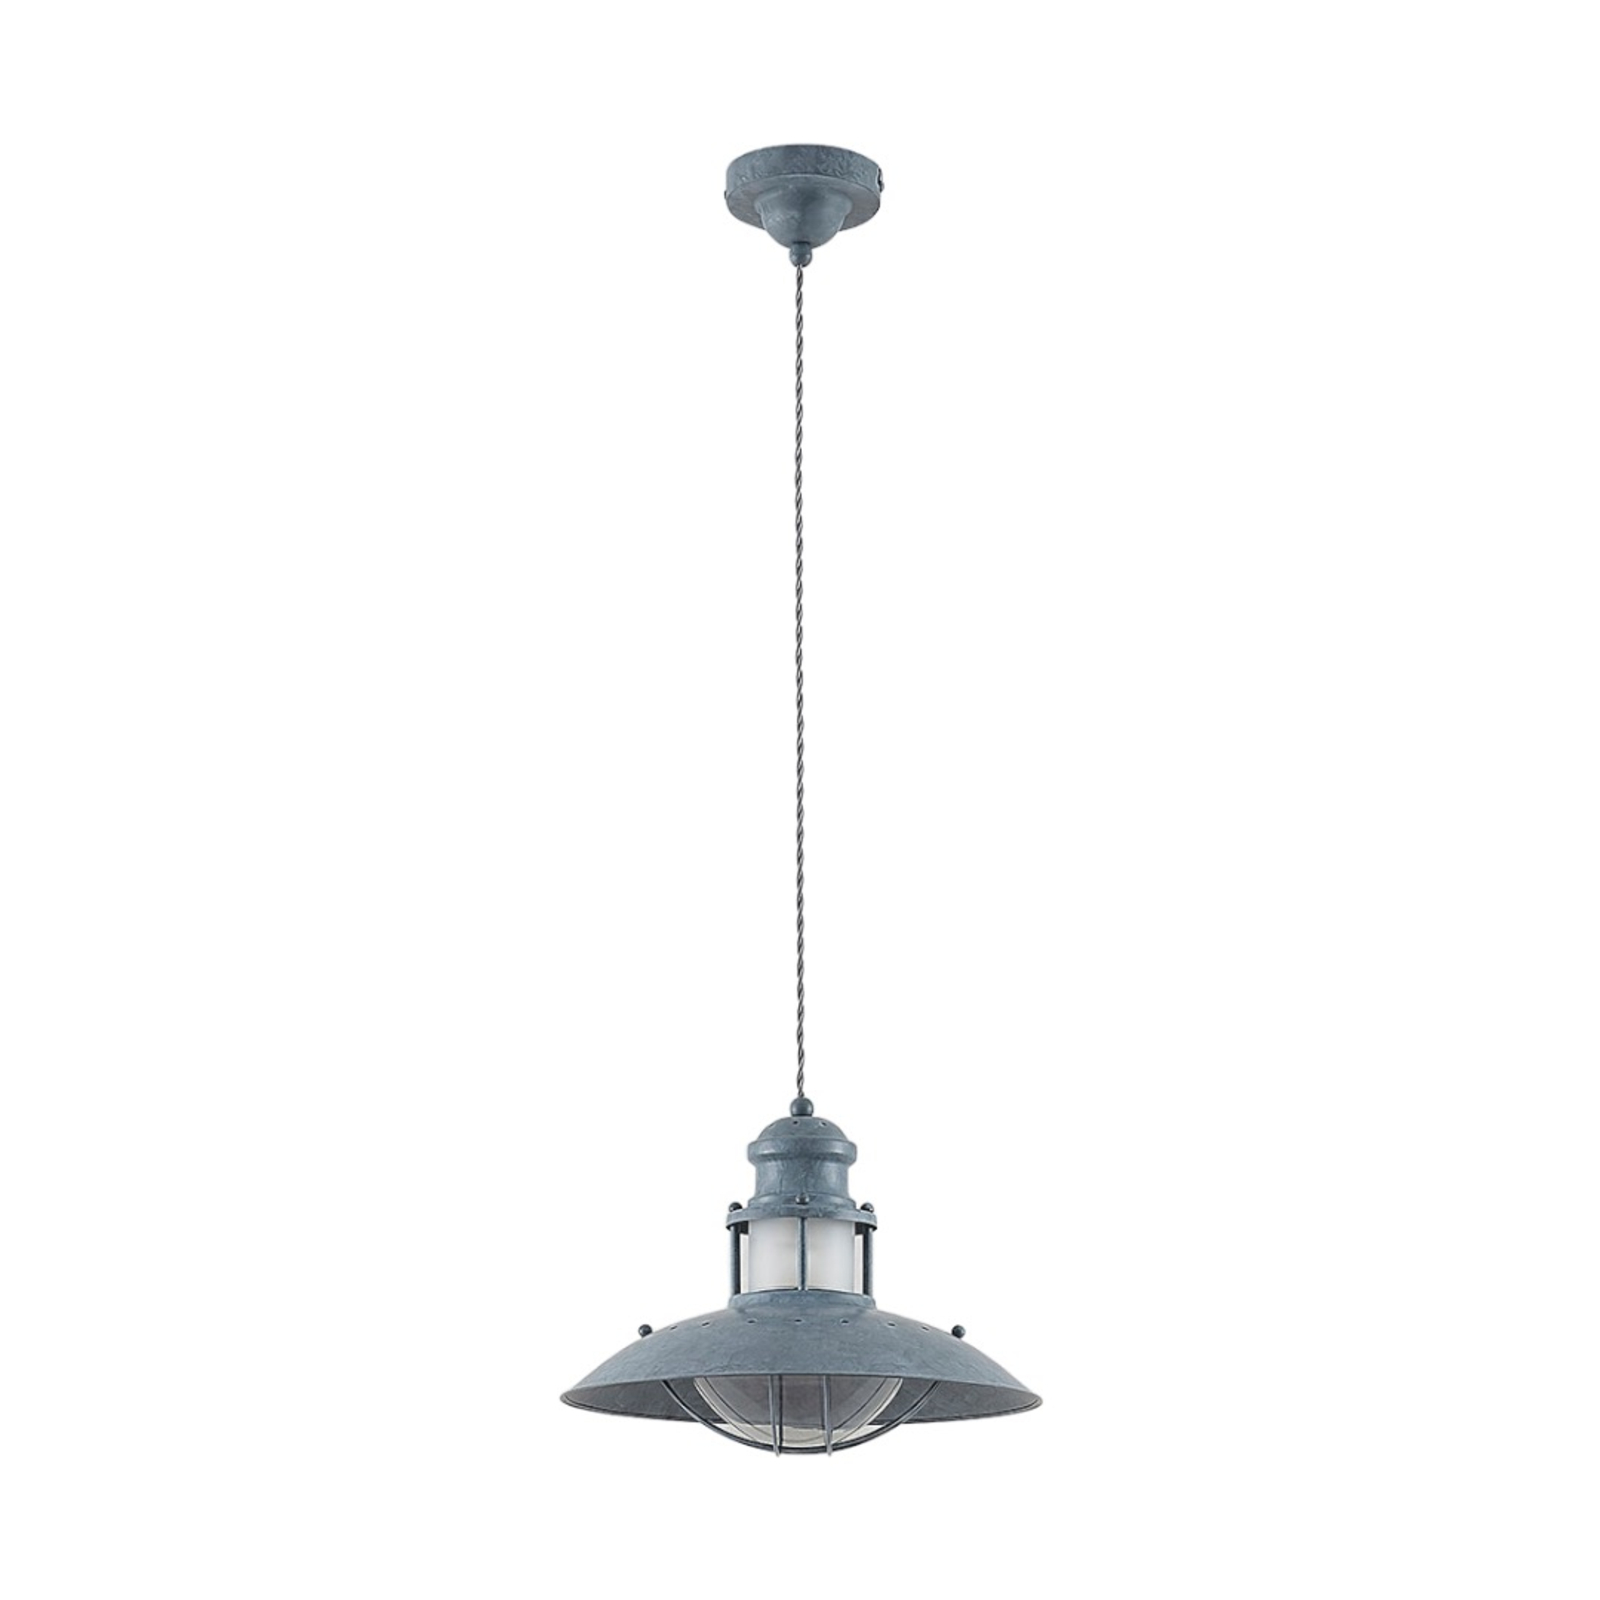 Industriální závěsná lampa Louisanne, šedá